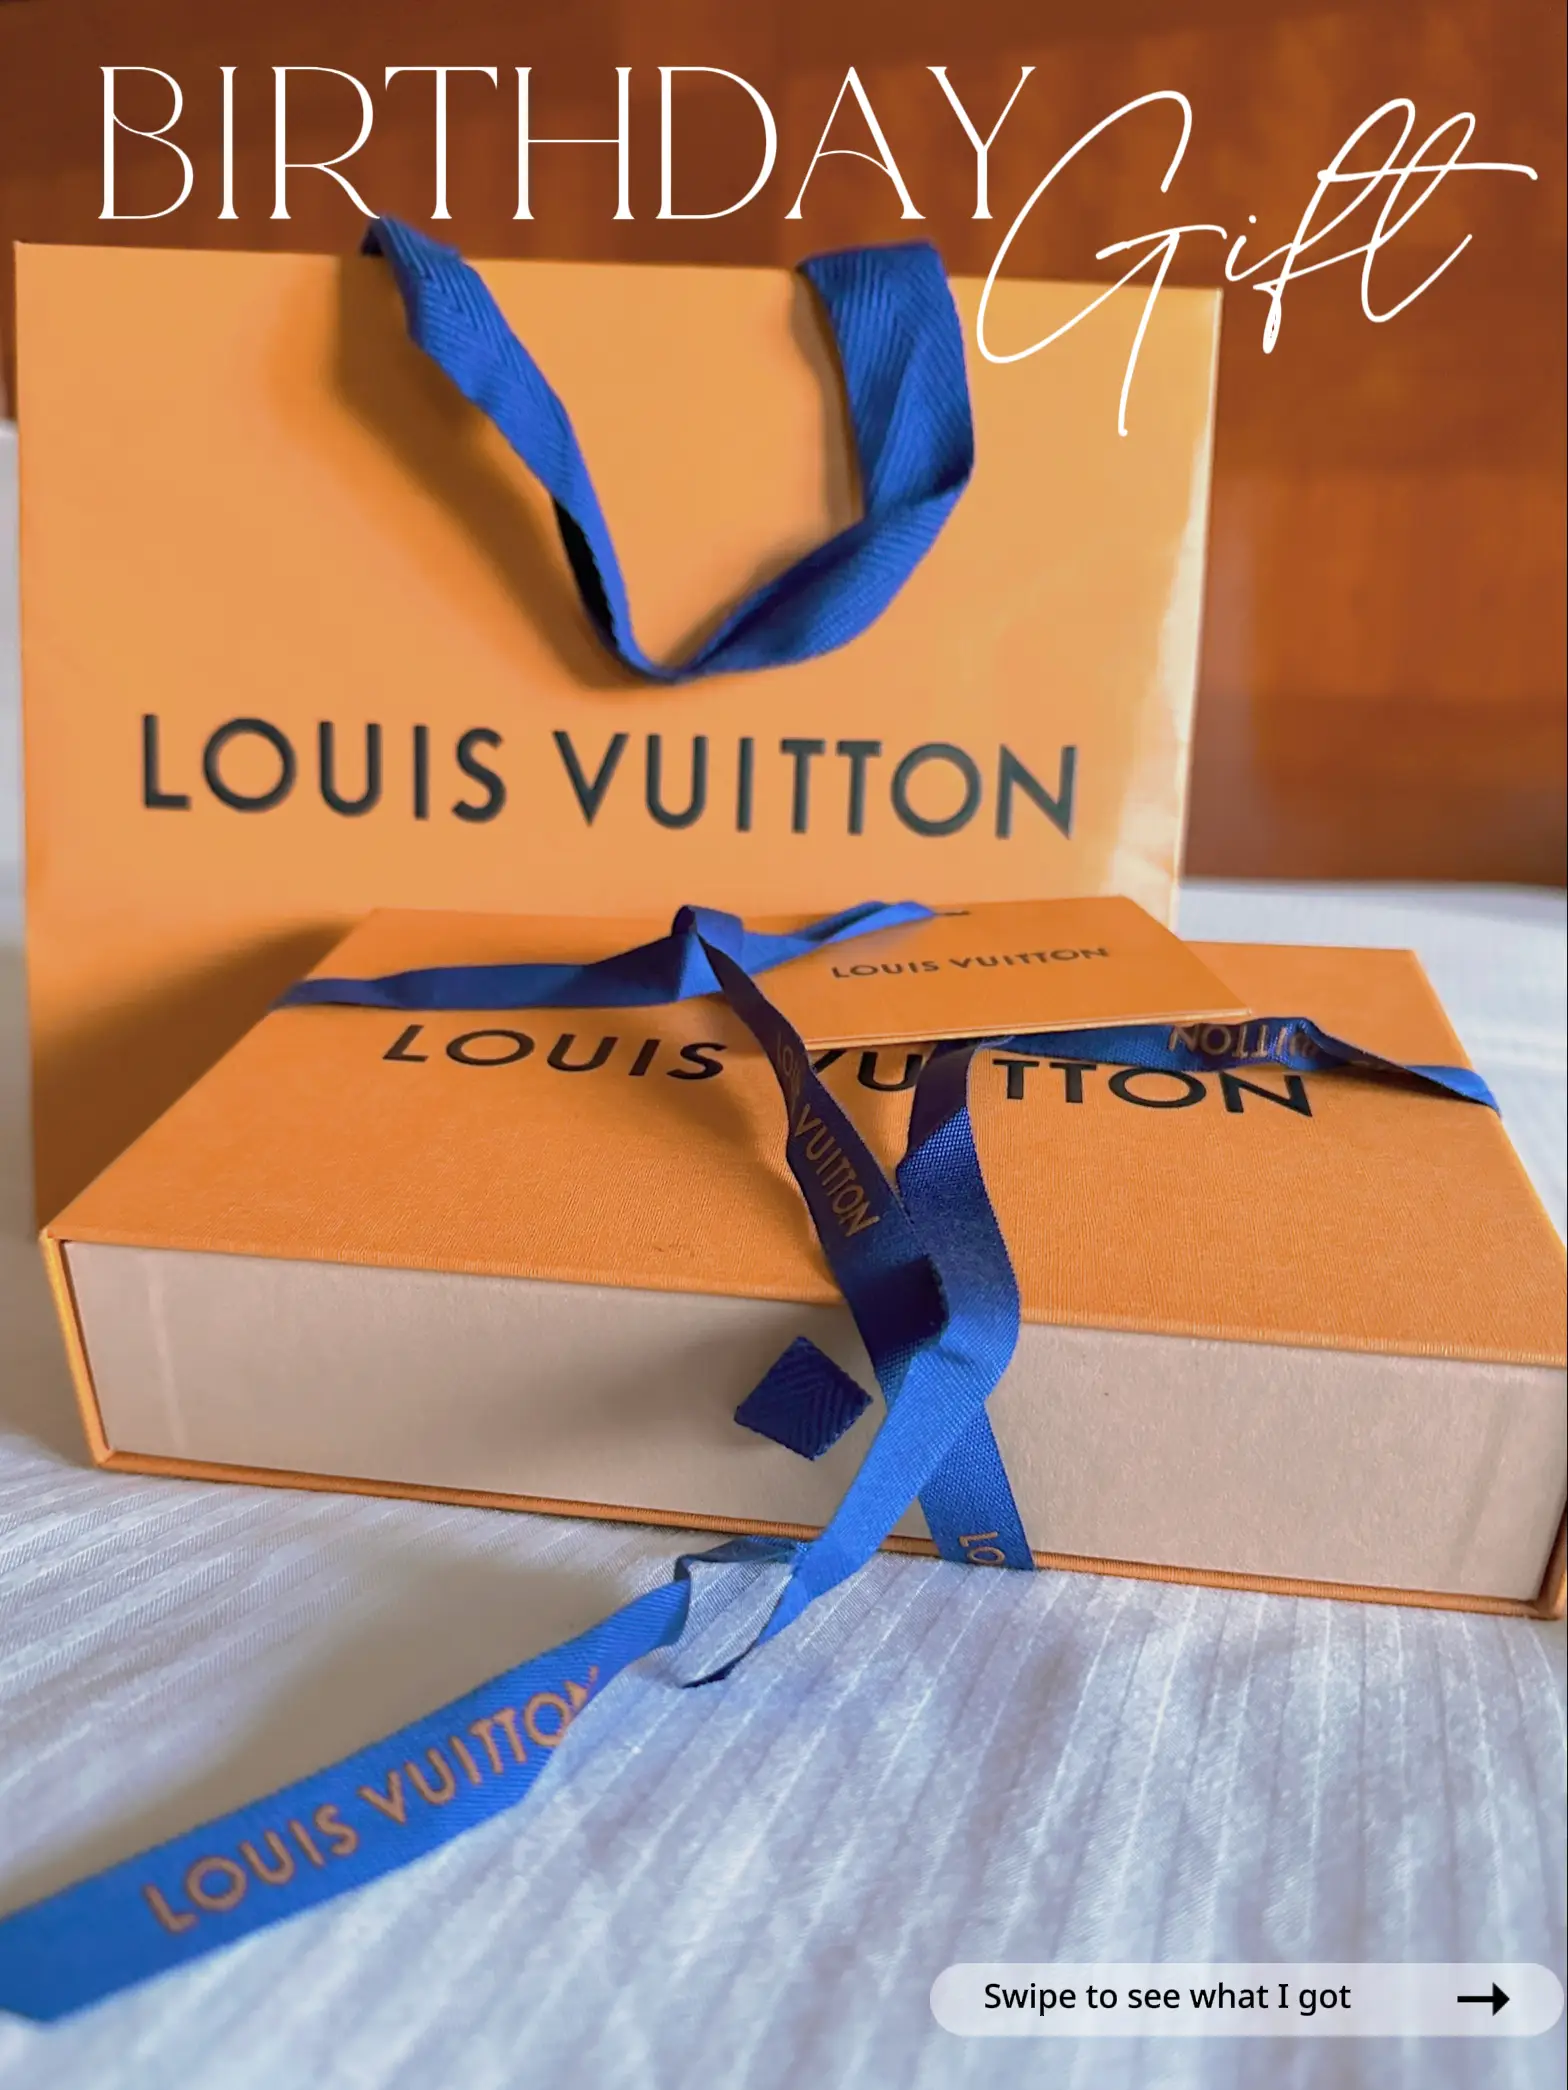 Louis Vuitton Gift Box and LV Ribbon  Louis vuitton gifts, Gift box, Louis  vuitton